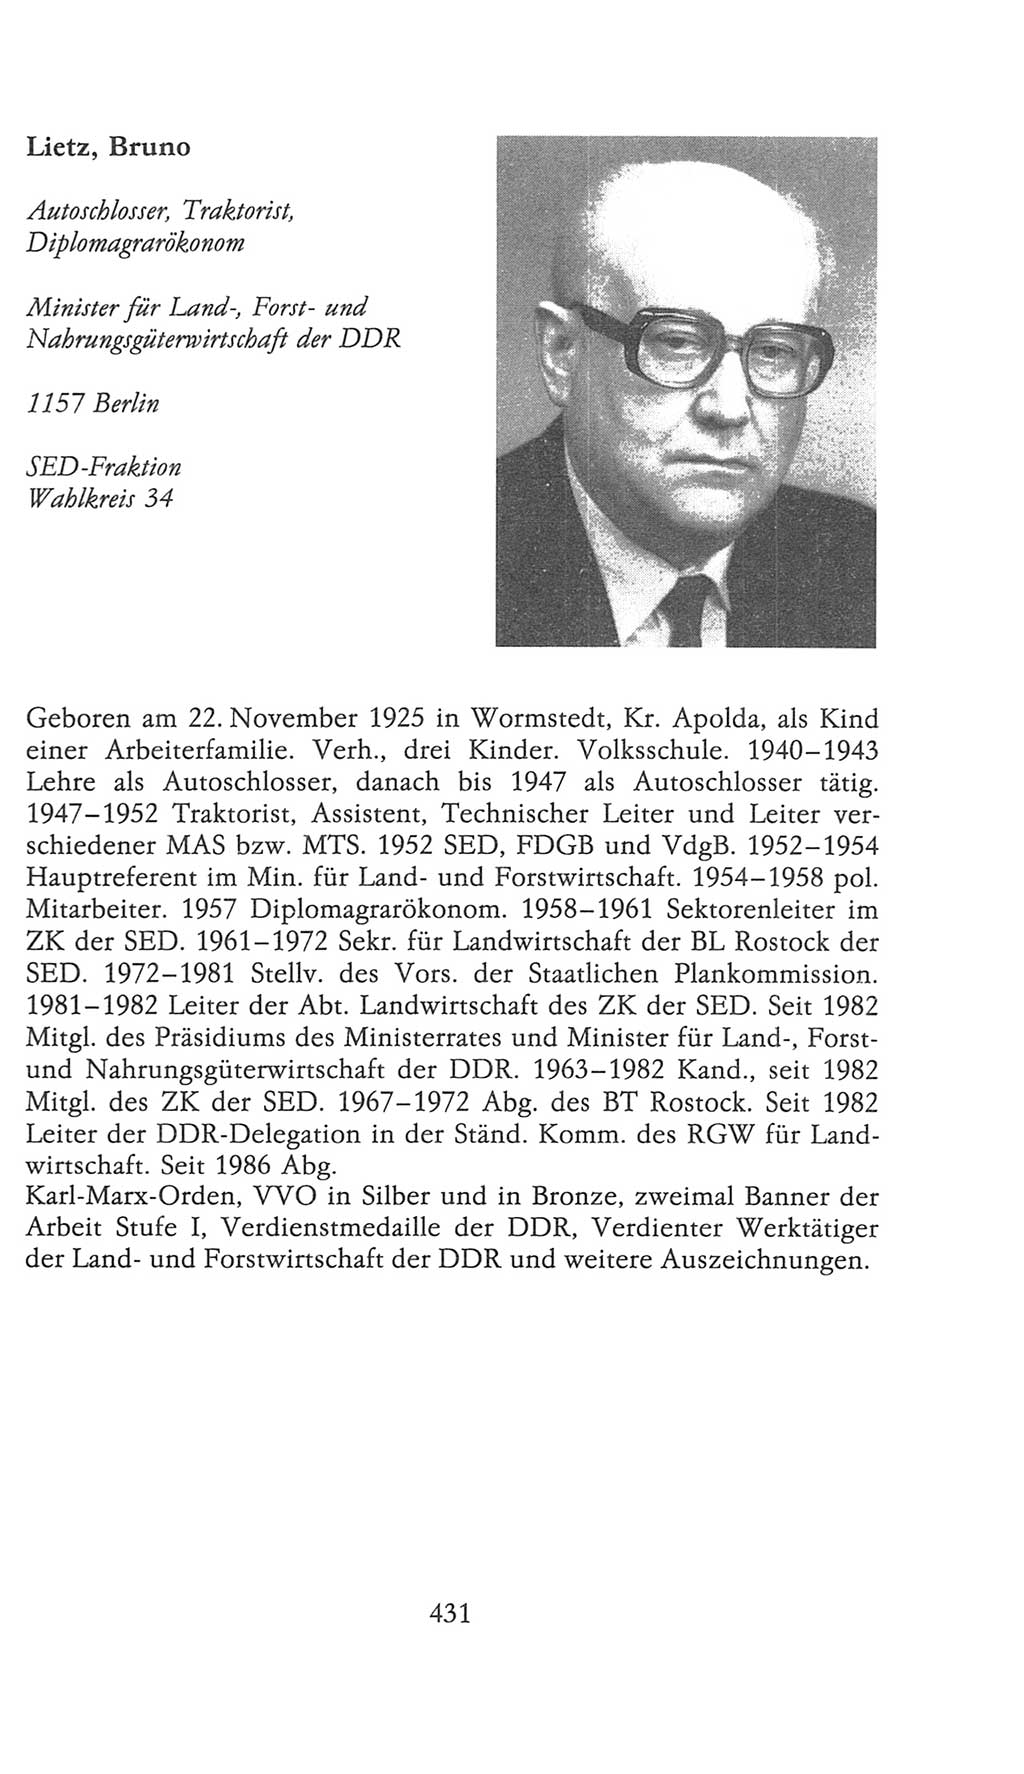 Volkskammer (VK) der Deutschen Demokratischen Republik (DDR), 9. Wahlperiode 1986-1990, Seite 431 (VK. DDR 9. WP. 1986-1990, S. 431)